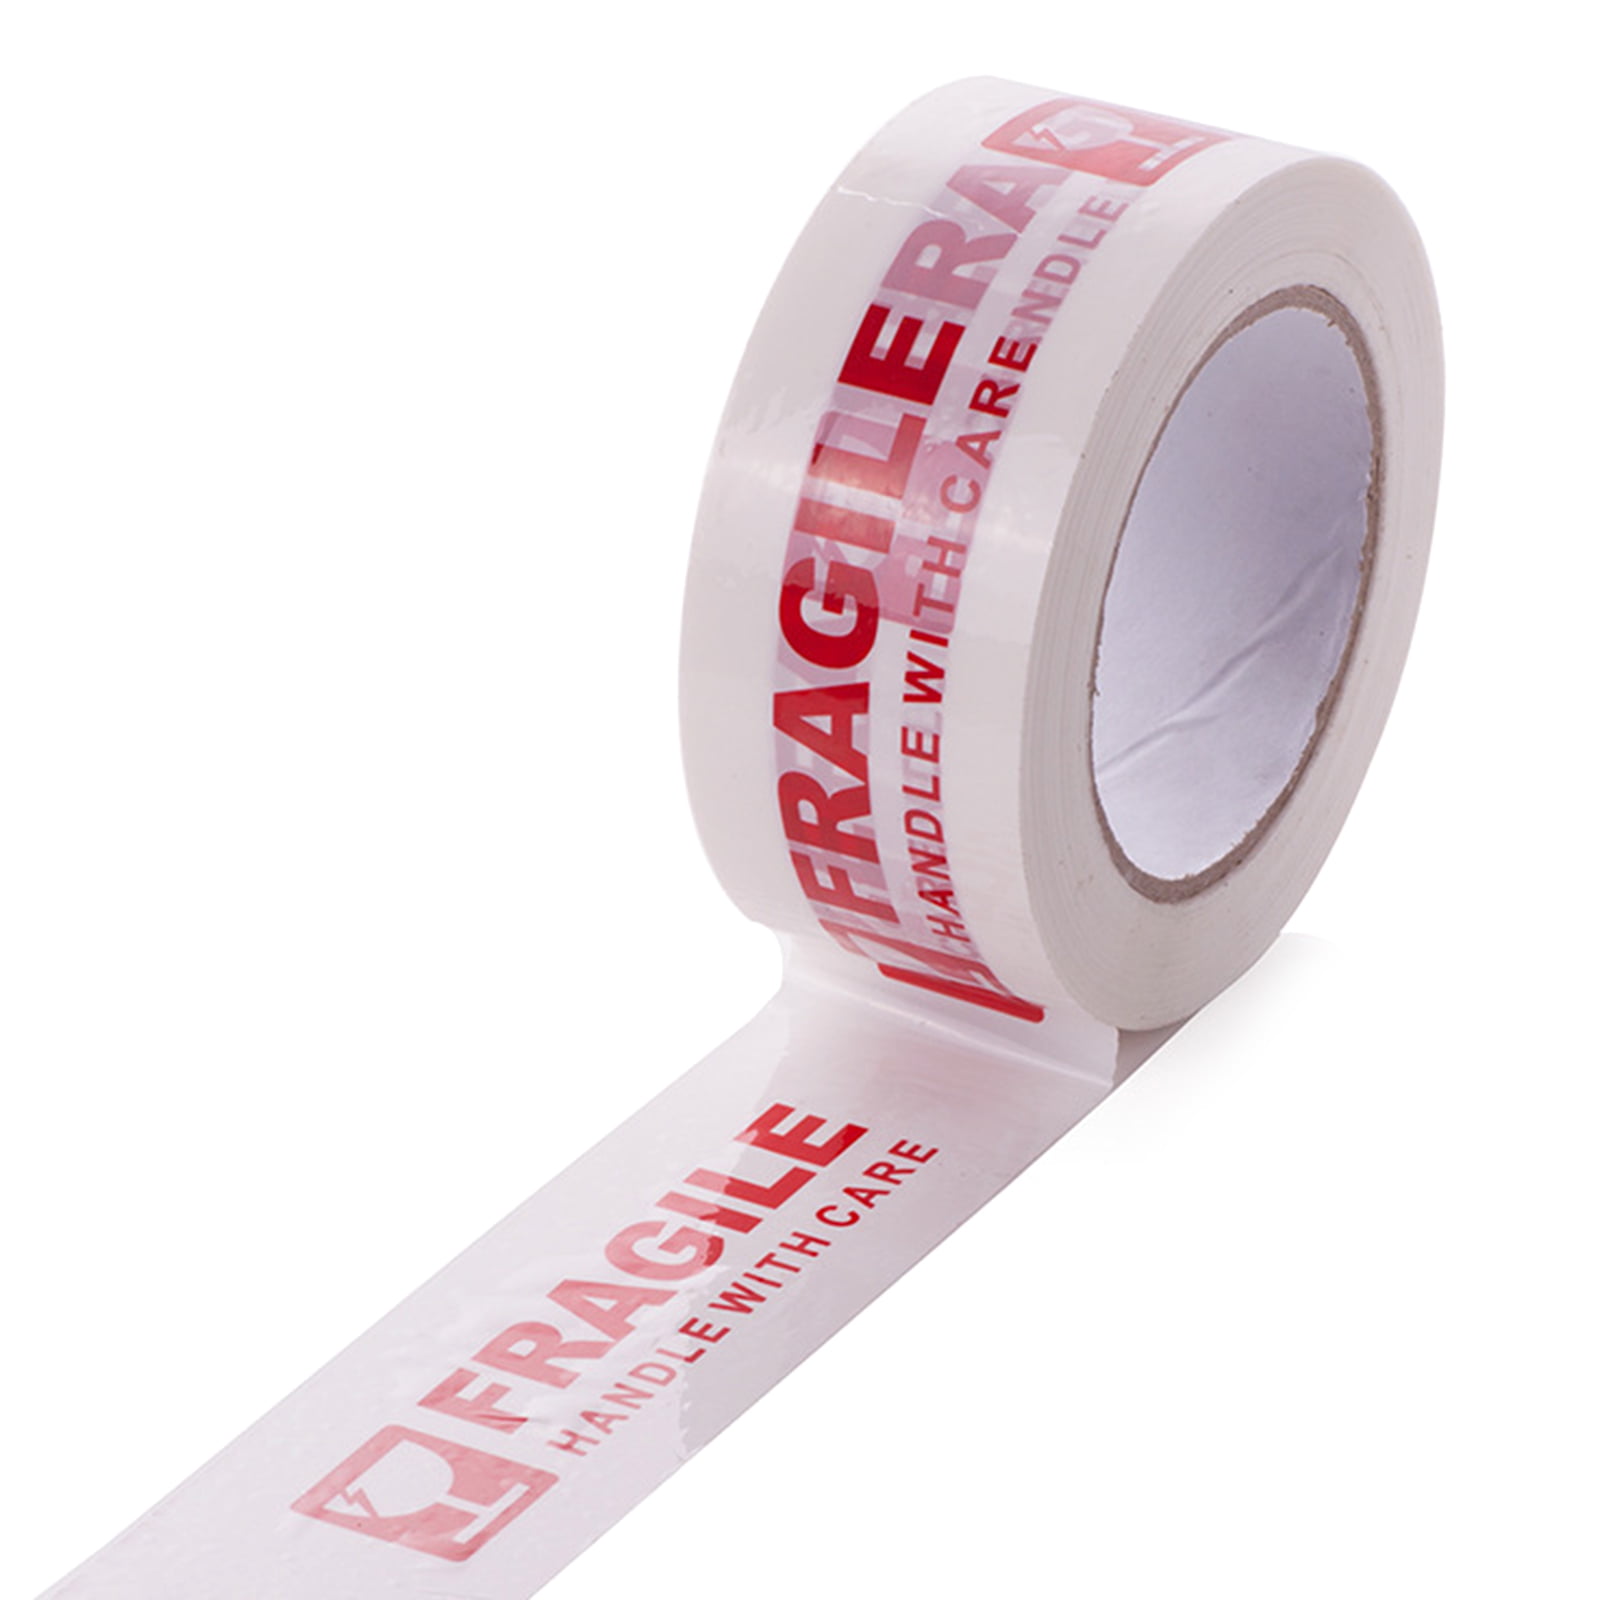 新品Juvale Fragile Adhesive Warning Tape - Heavy Duty White Red